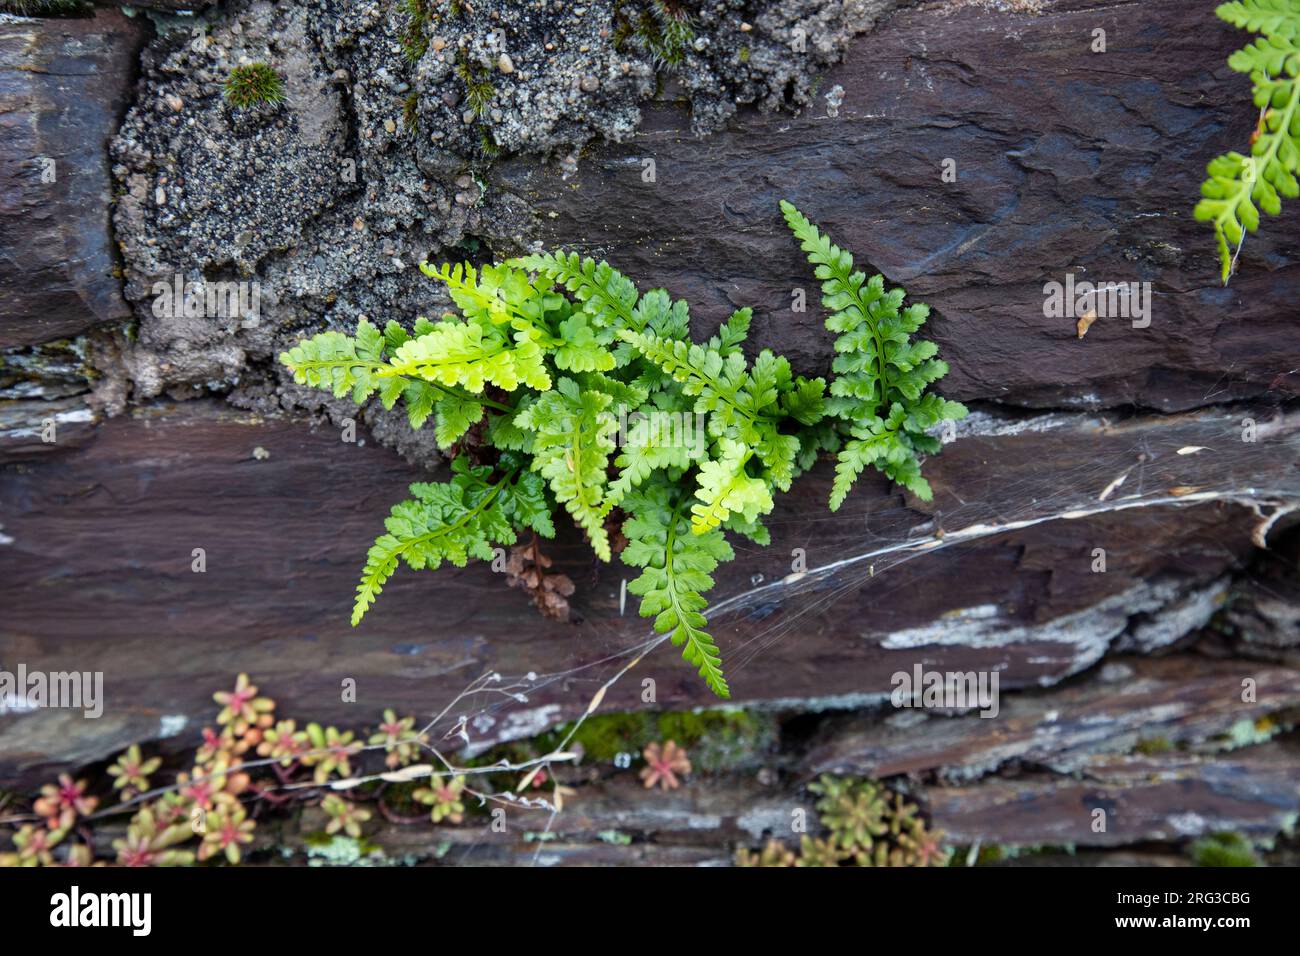 Black spleenwort, Asplenium adiantum-nigrum Stock Photo